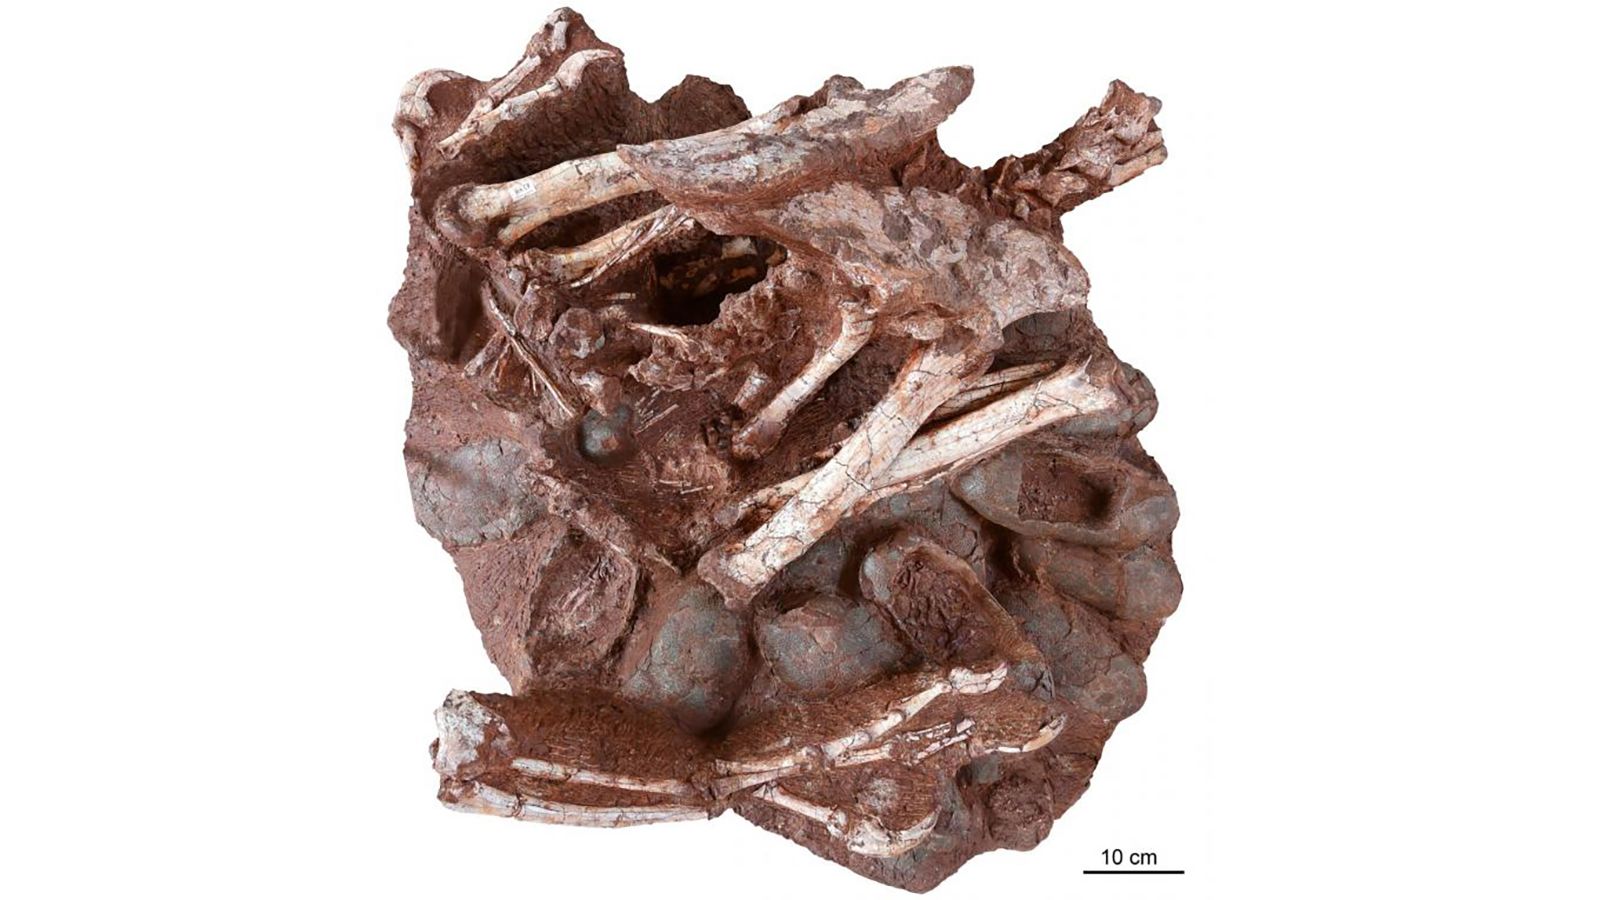 first dinosaur fossil found